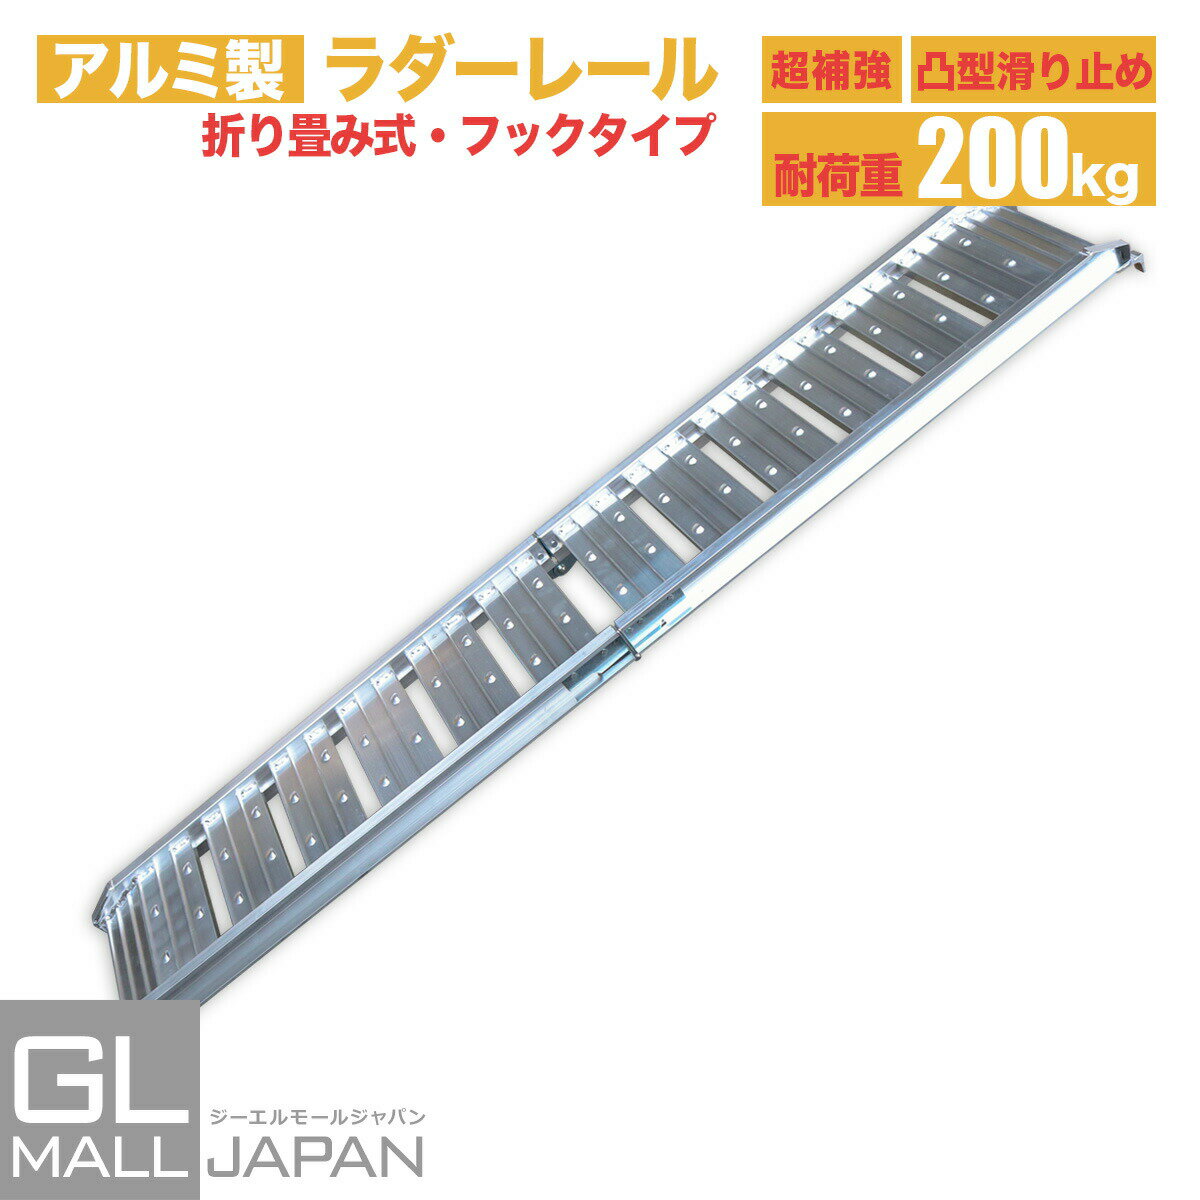 楽天GL JAPAN 2号店【FUNJOB】【新品】アルミラダーレール Type-D 折畳式 耐荷重200kg / アルミブリッジ（7.0kg）【セイノーSSX発送】【代引不可】【送料無料】